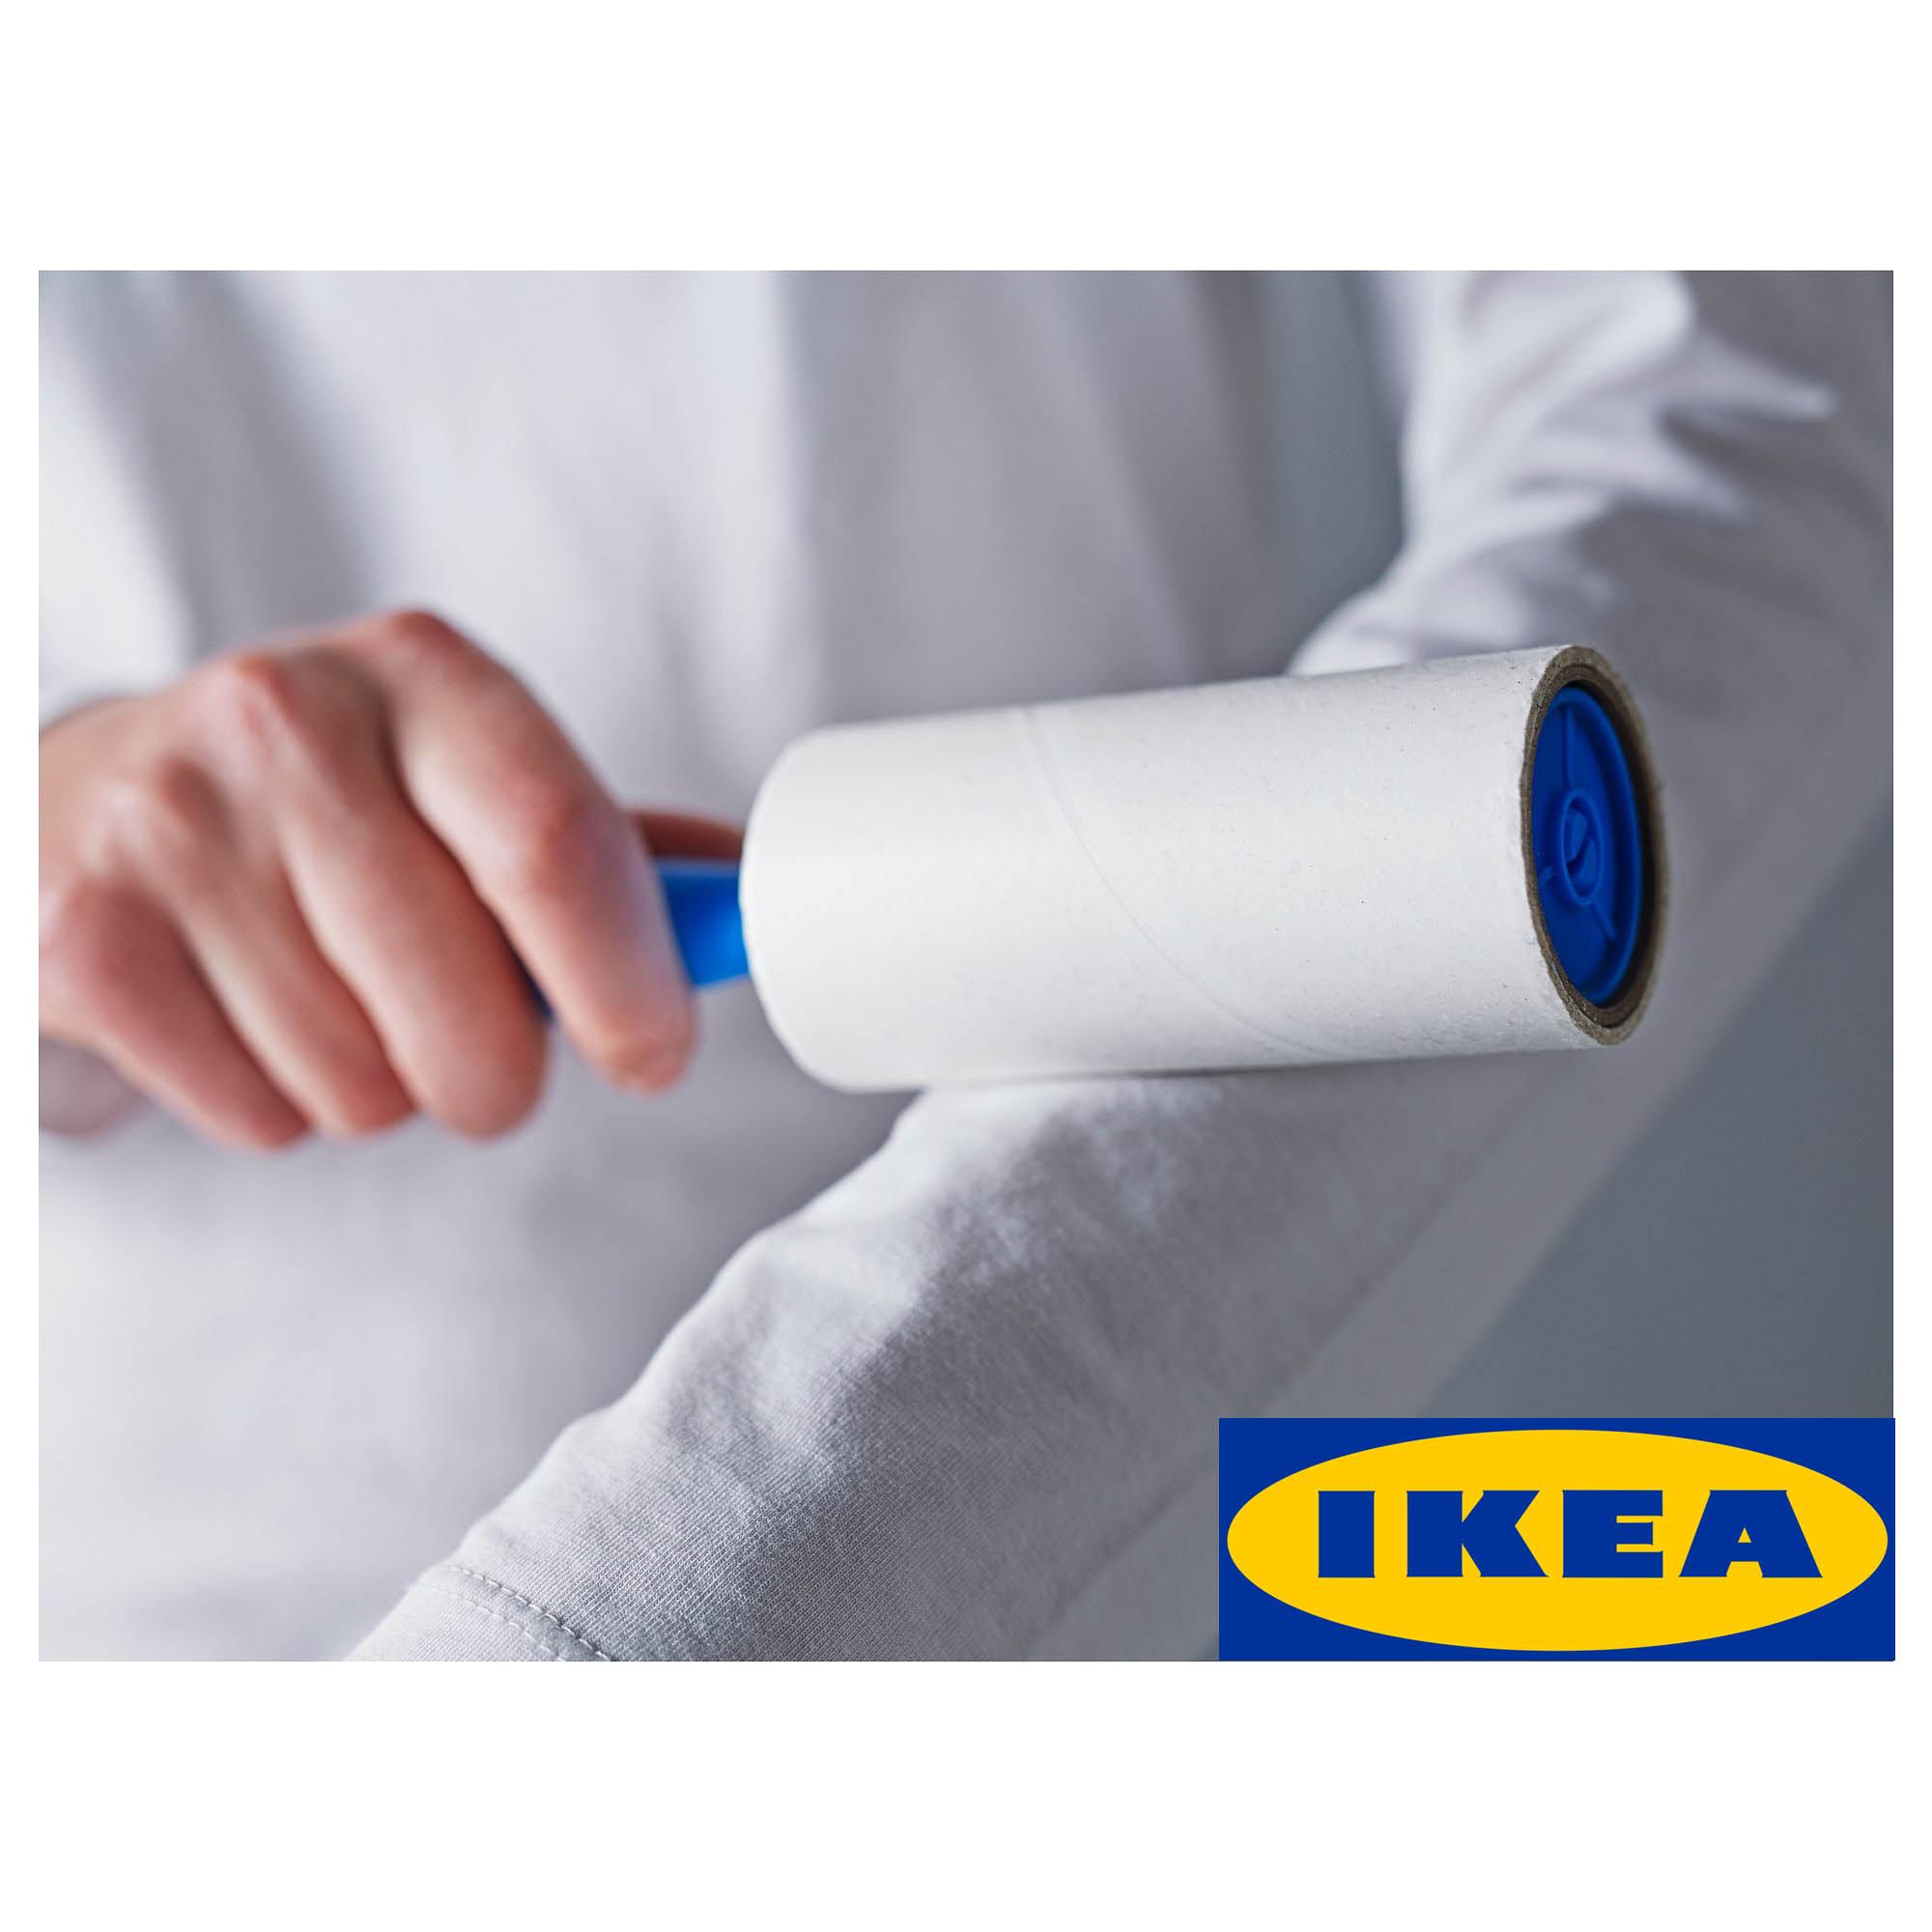 IKEA BASTIS เบสติส ลูกกลิ้งเก็บขนฝุ่นเสื้อผ้า 3ด้าม